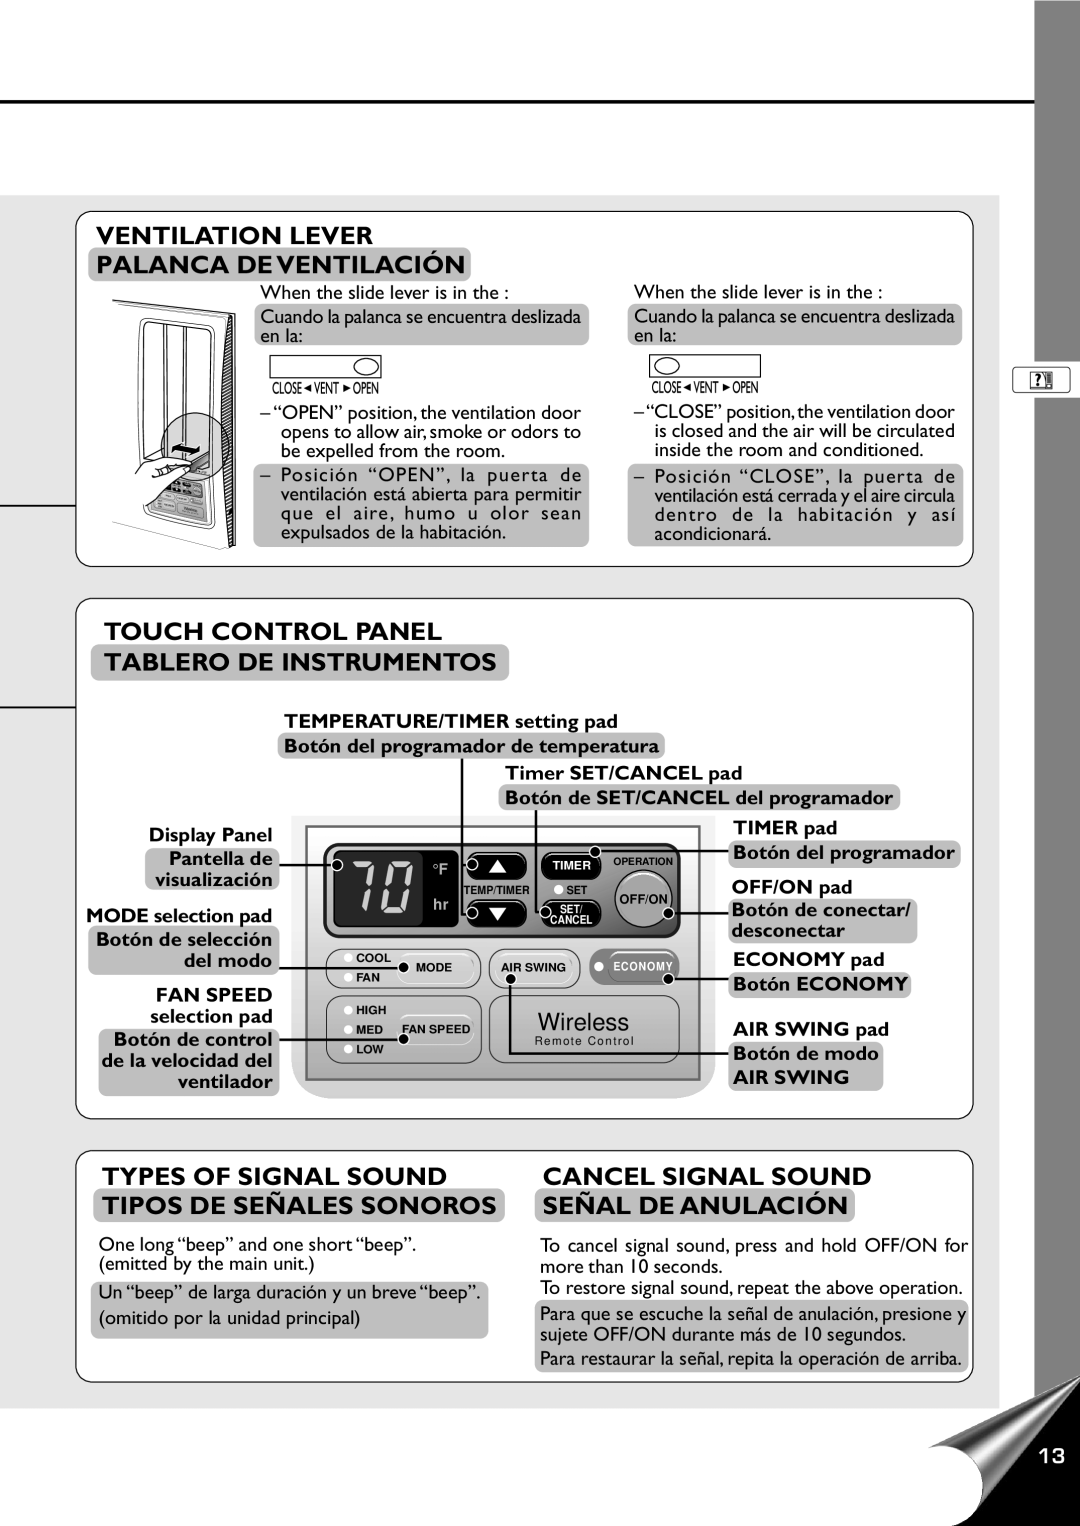 Panasonic CW-XC100AU Ventilation Lever Palanca De Ventilación, Touch Control Panel, Tablero De Instrumentos, Wireless 